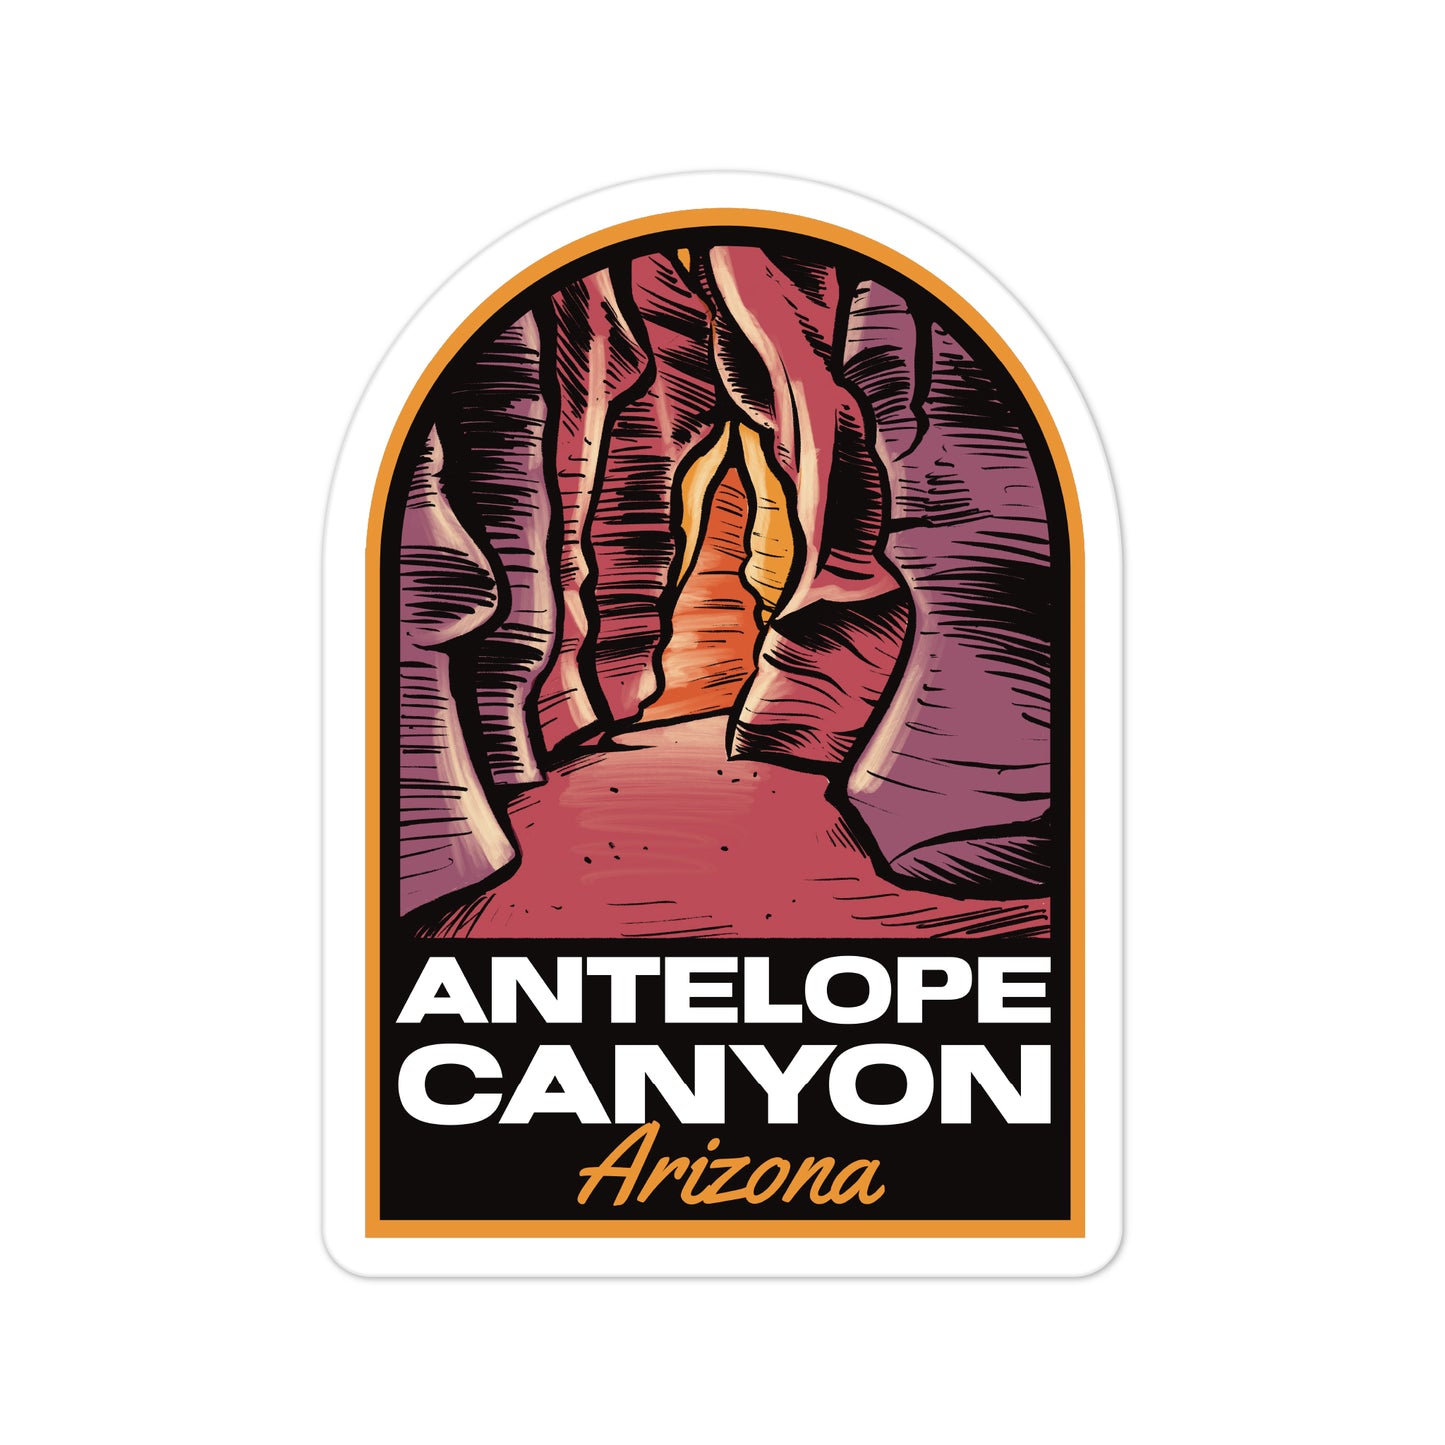 A sticker of Antelope Canyon Arizona